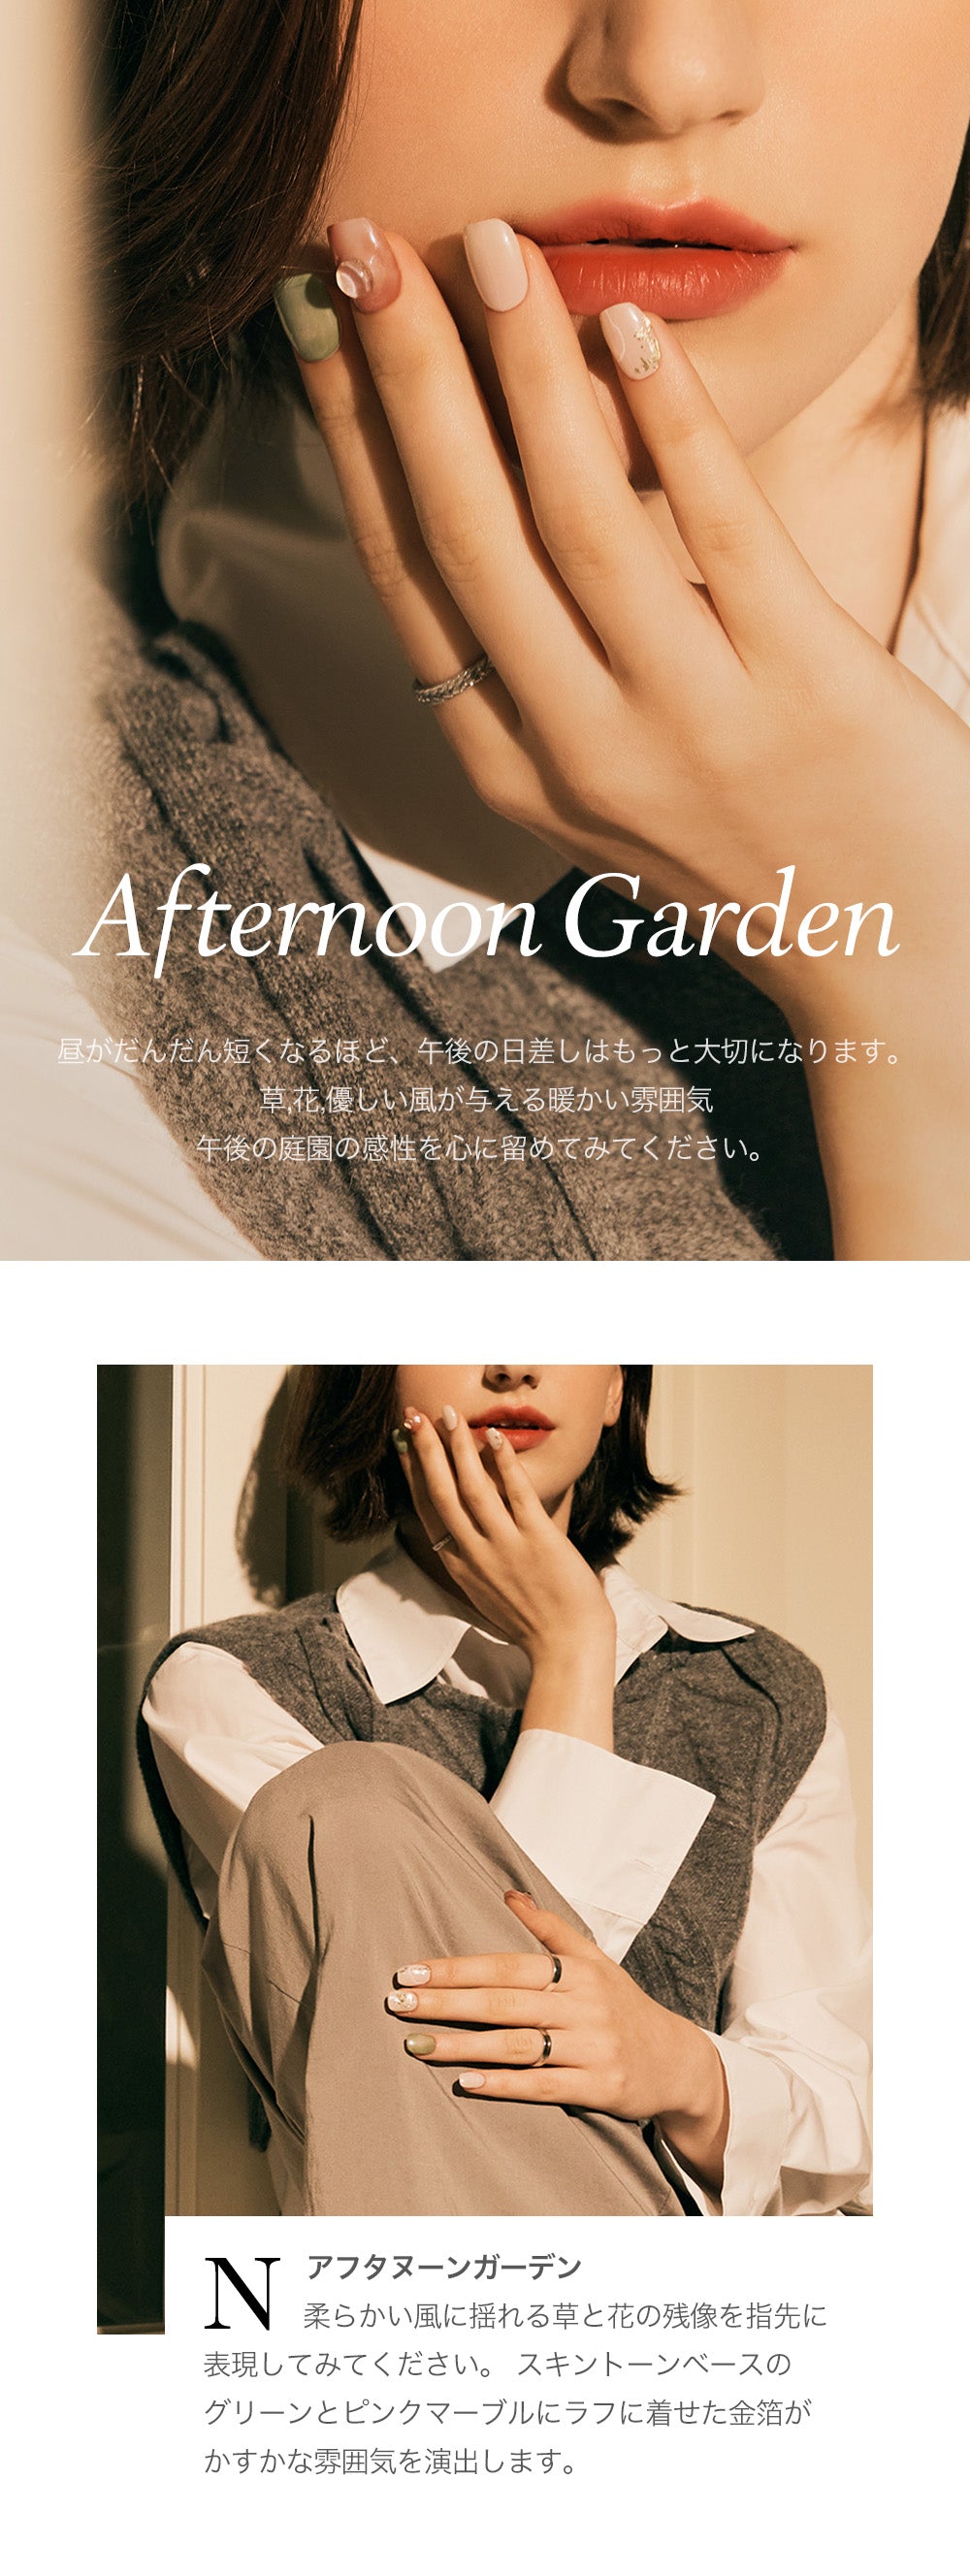 N Afternoon Garden